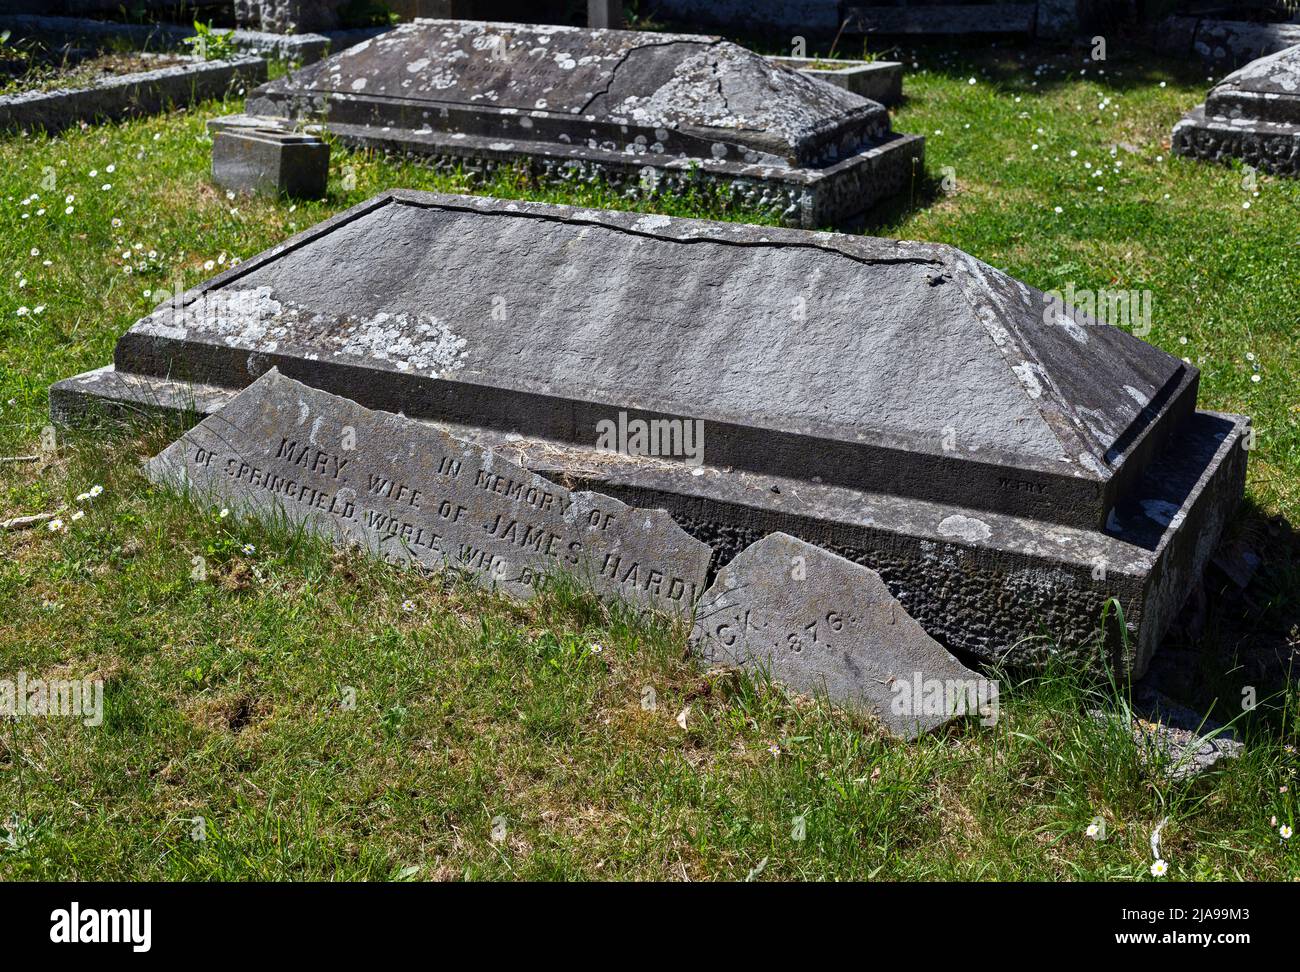 Una tumba en descomposición en el cementerio de Worle, Reino Unido Foto de stock